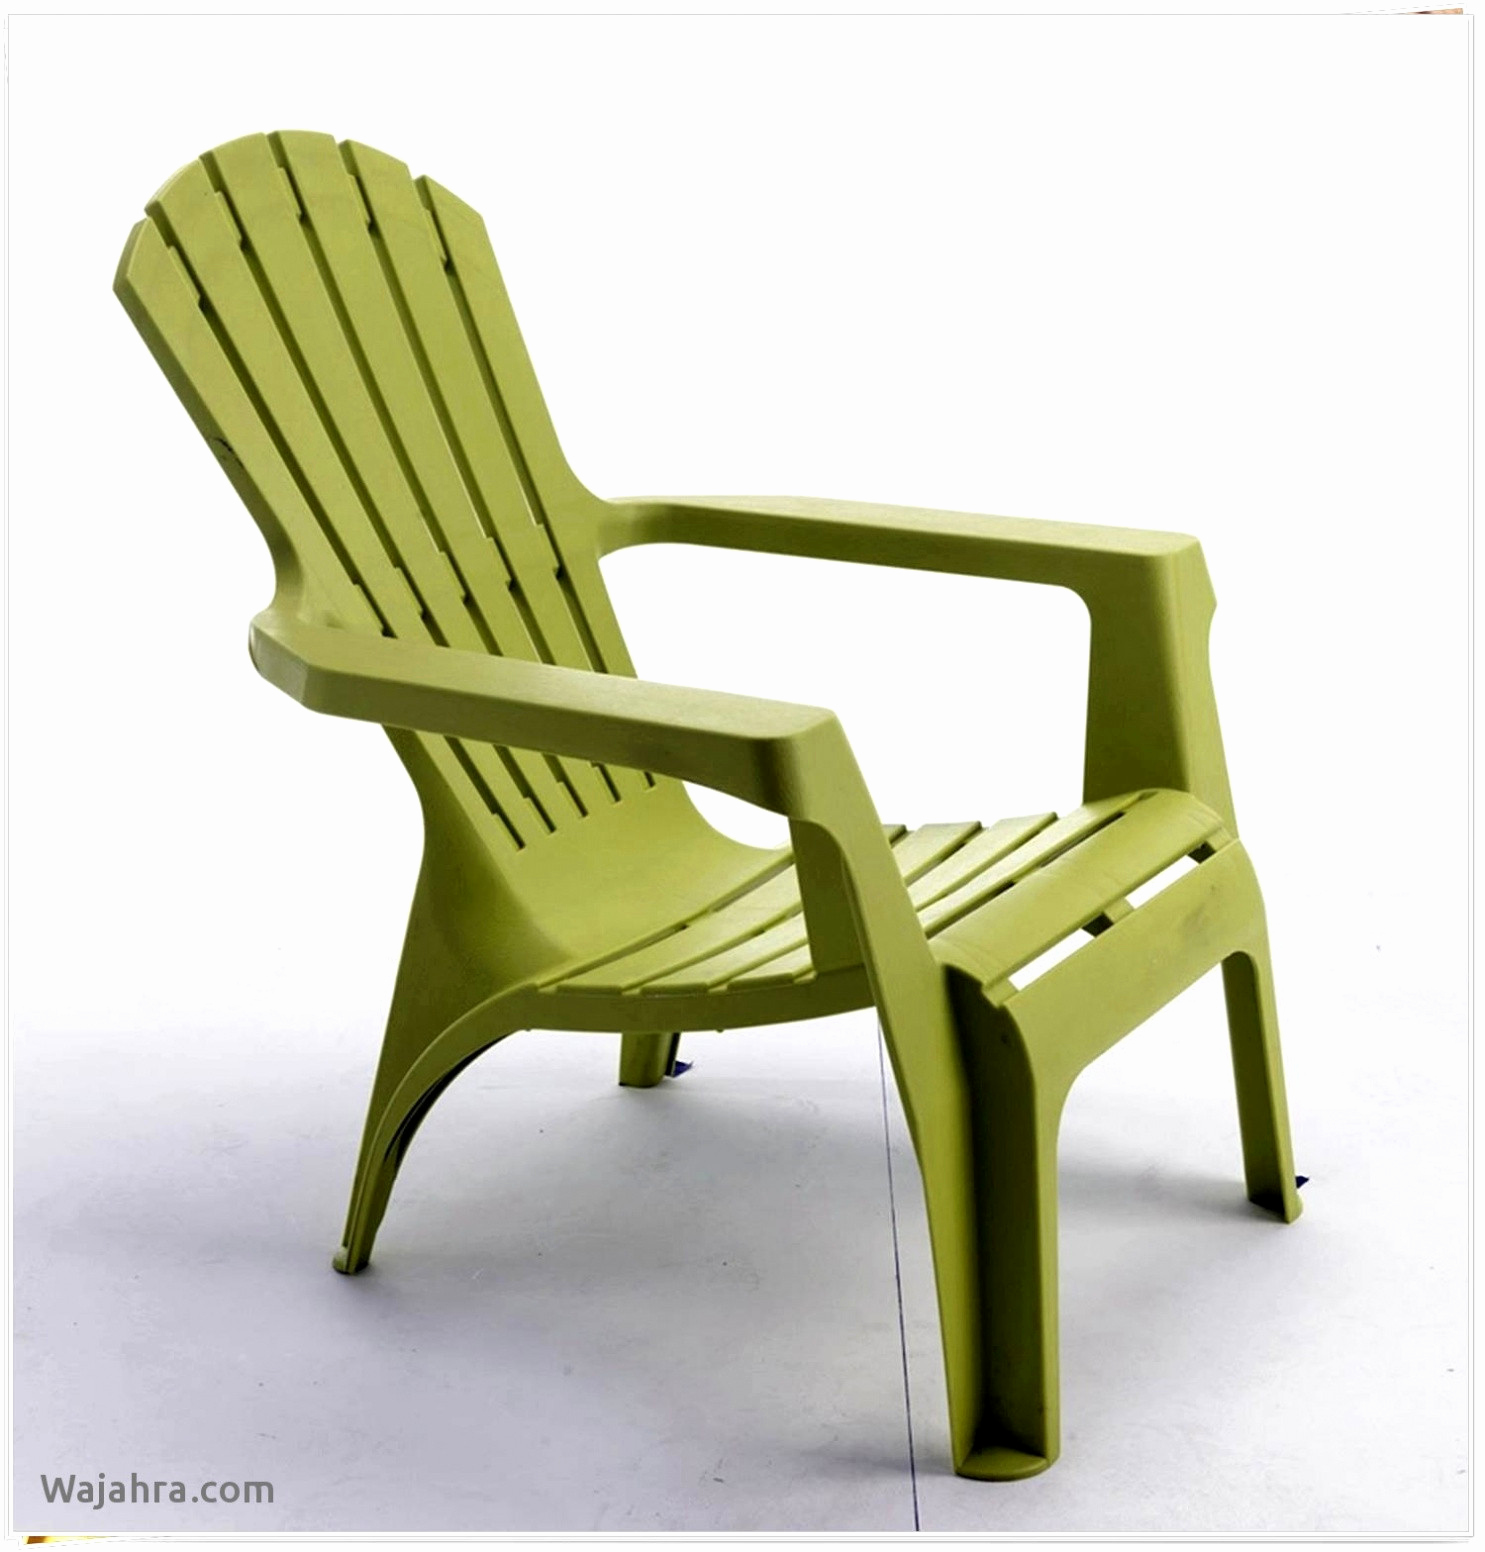 chaise salon design frais fauteuil pas cher design chaise salon pas cher chaise design cuir of chaise salon design